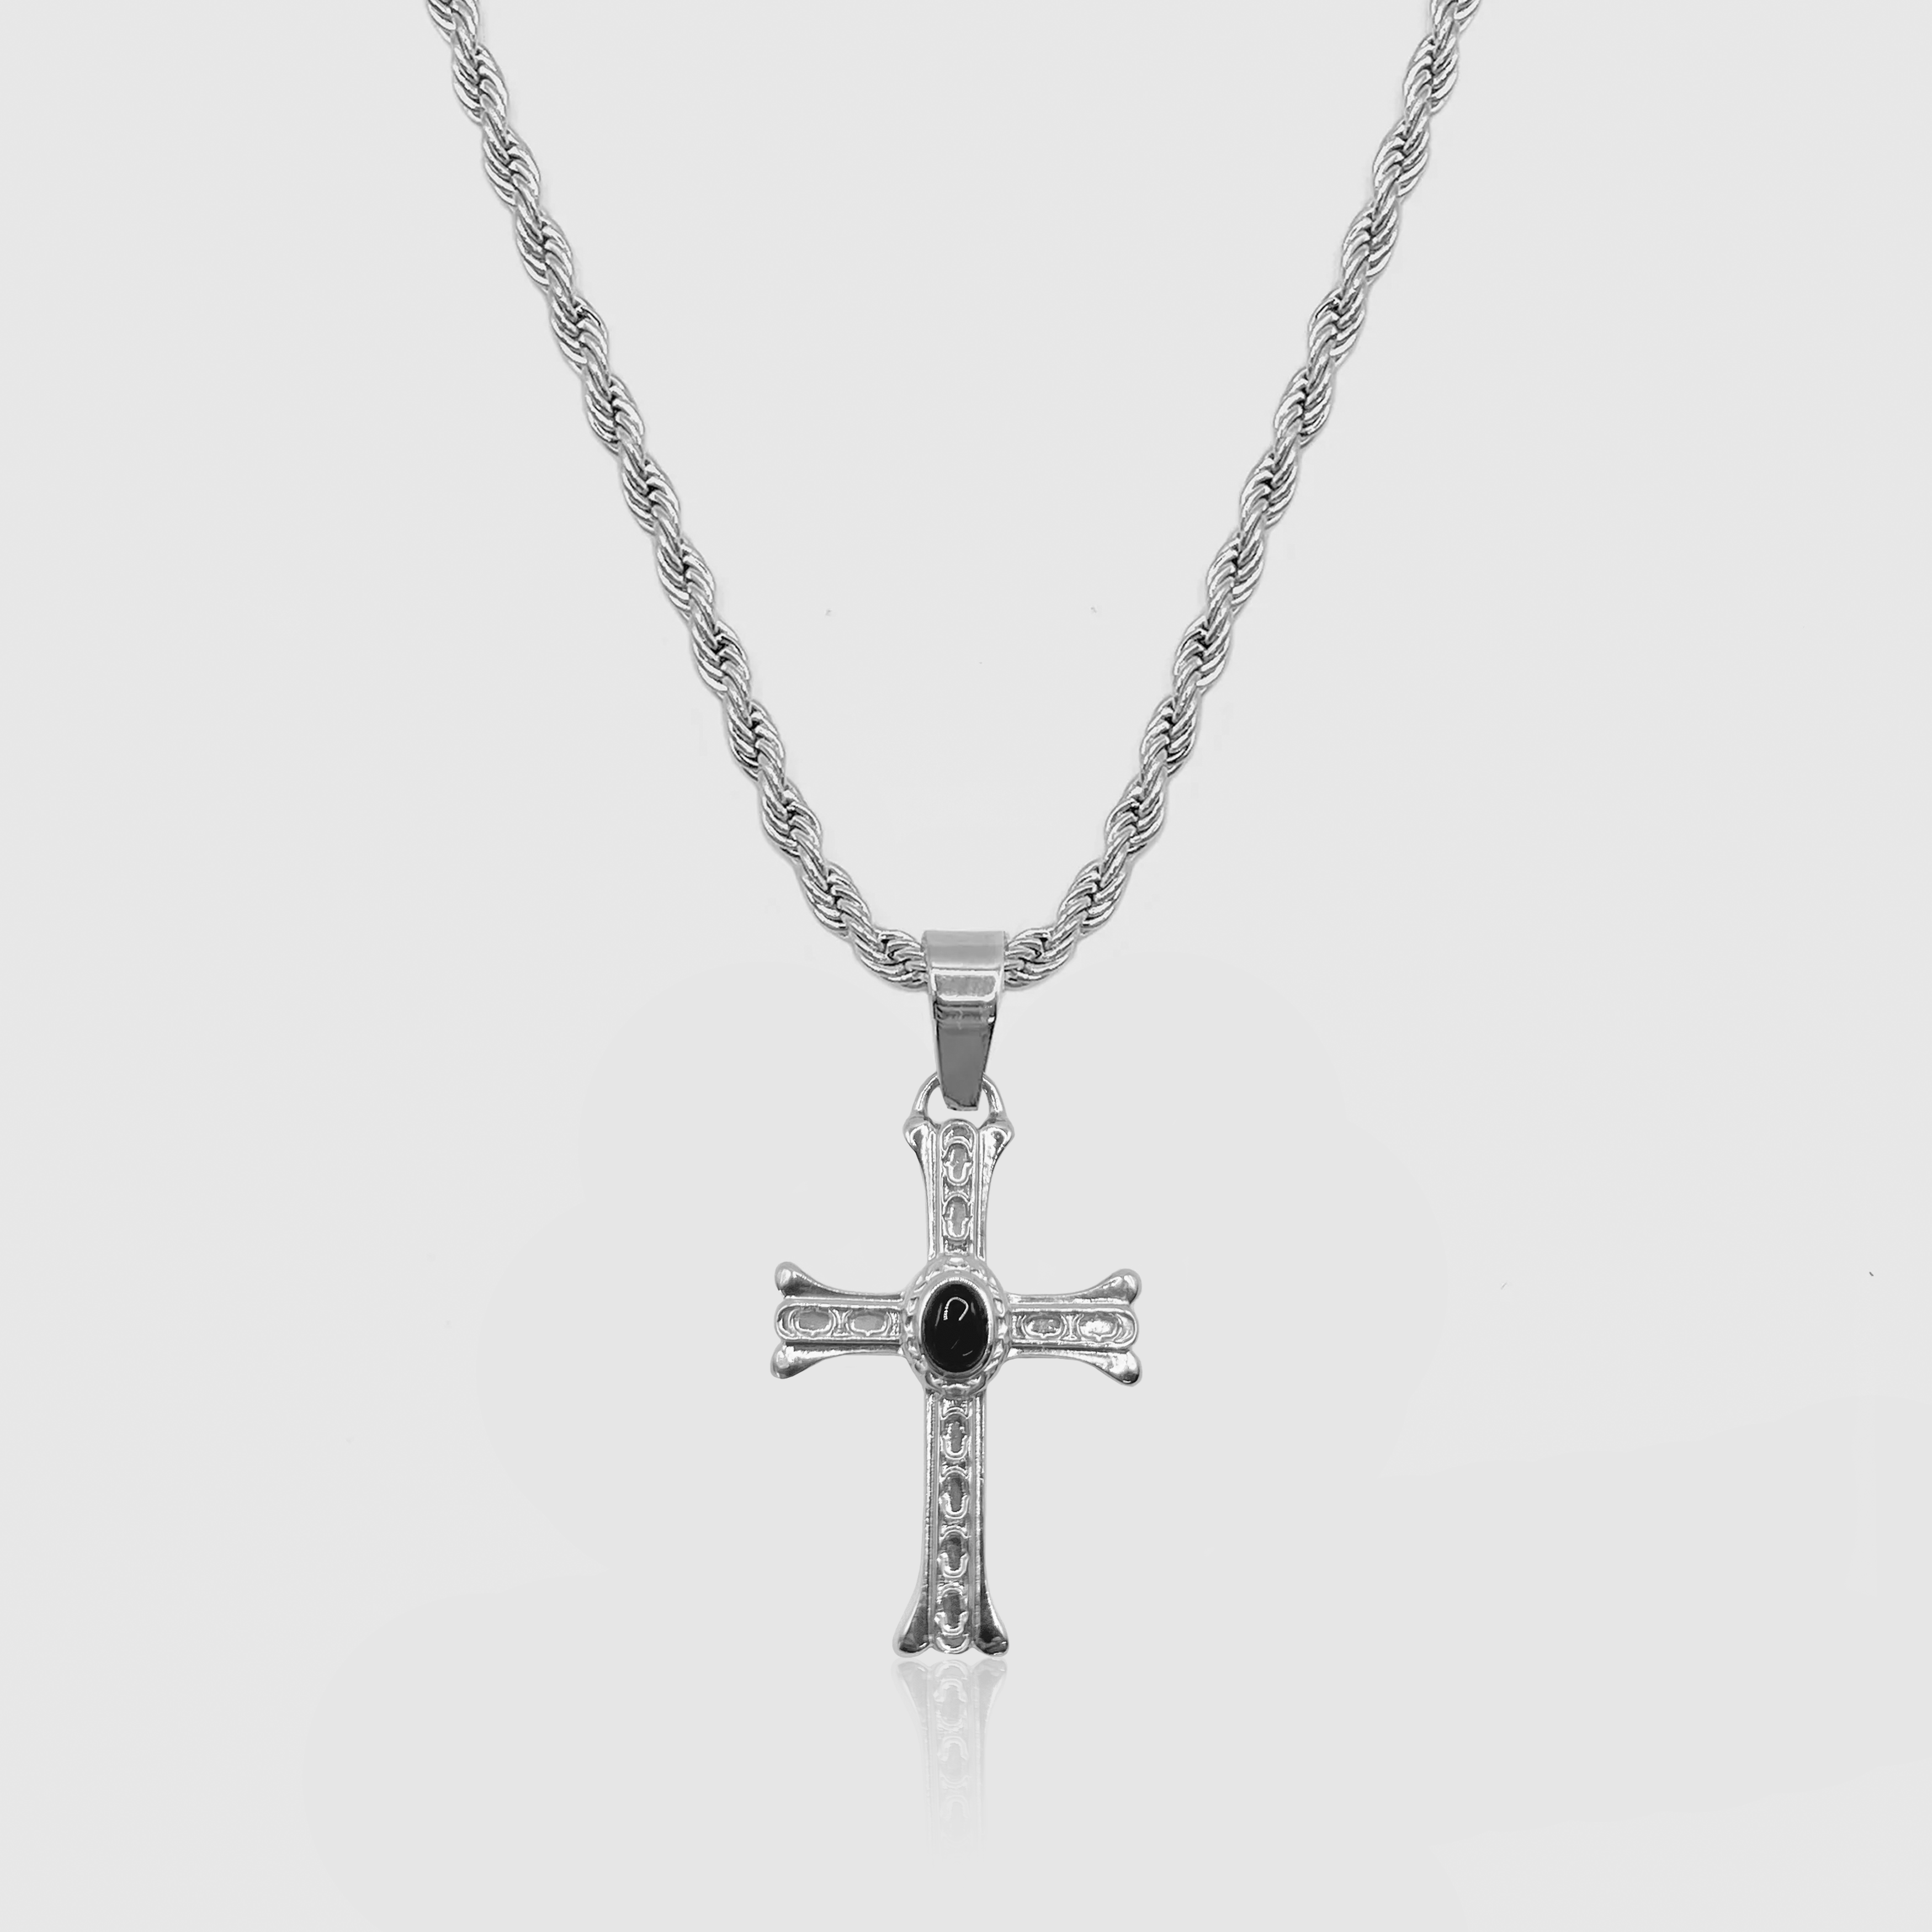 Silver Stone Cross Pendant Chain